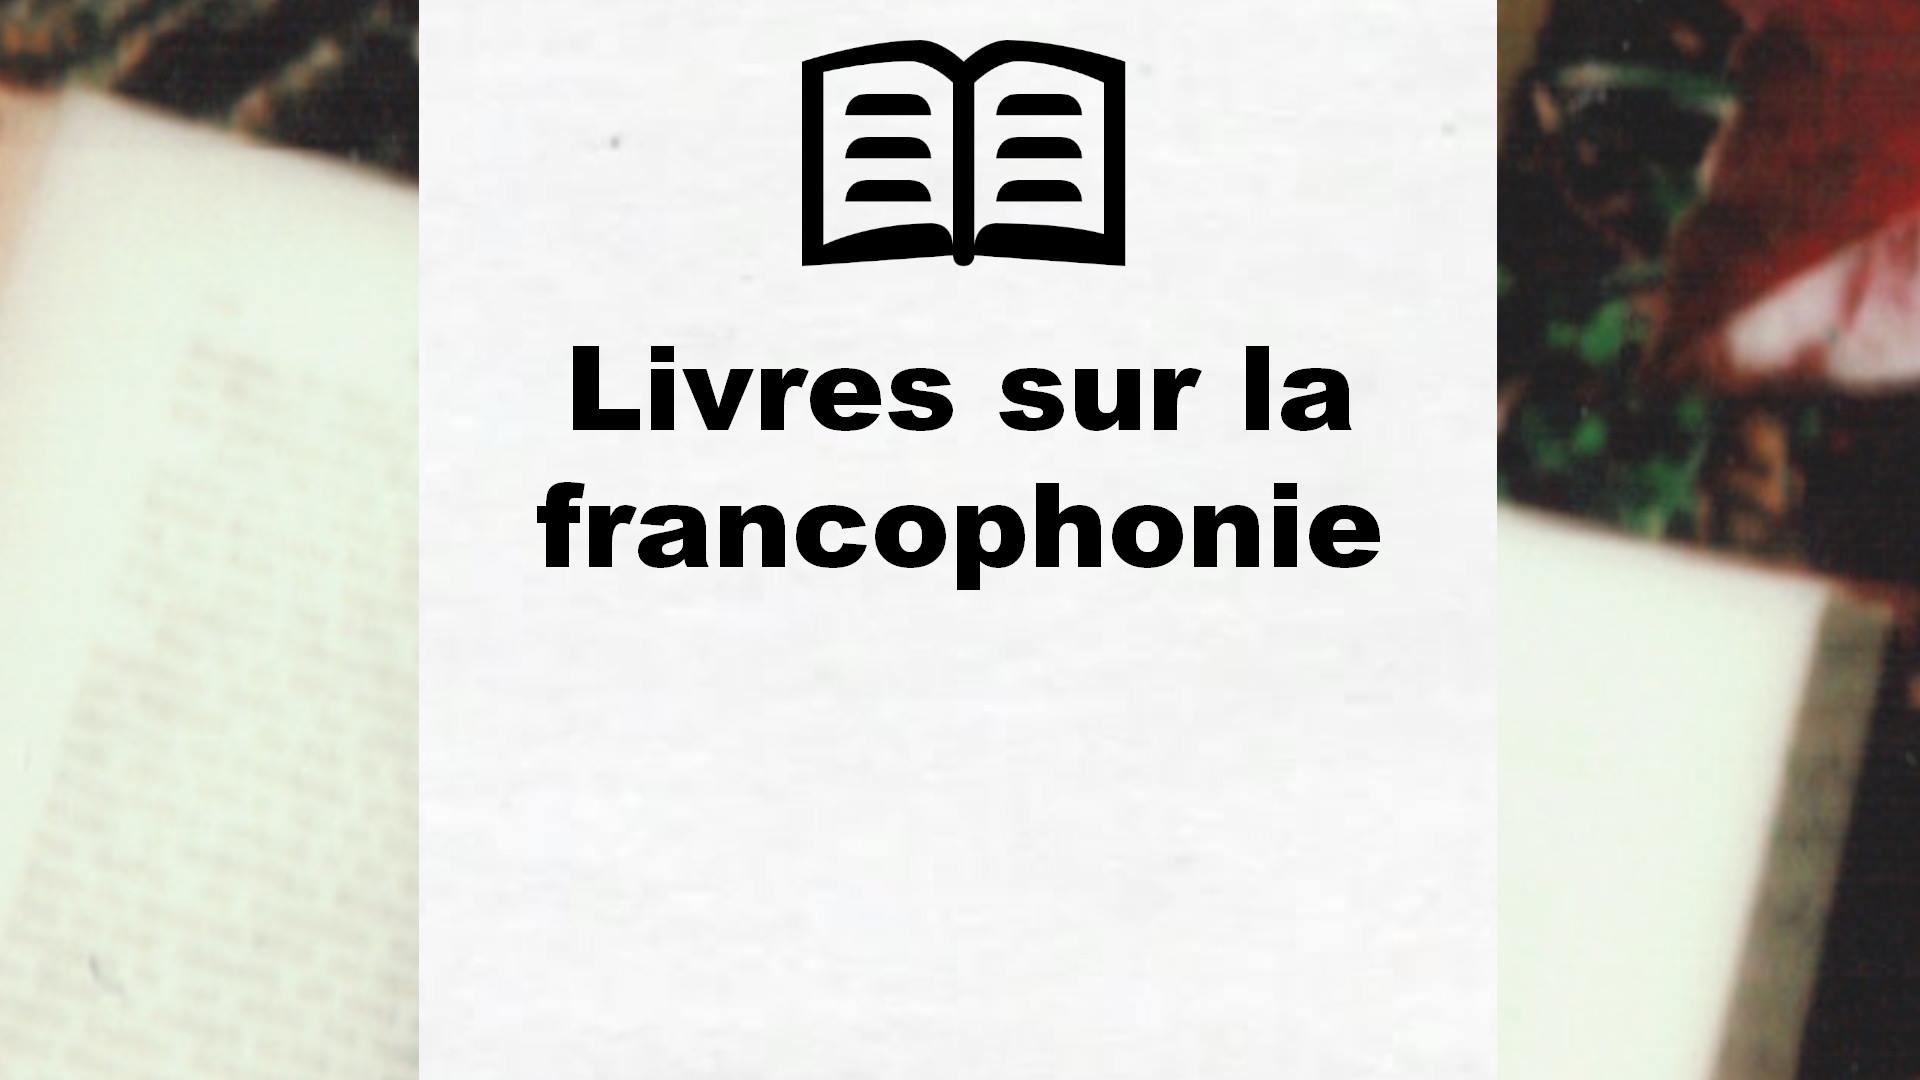 Livres sur la francophonie